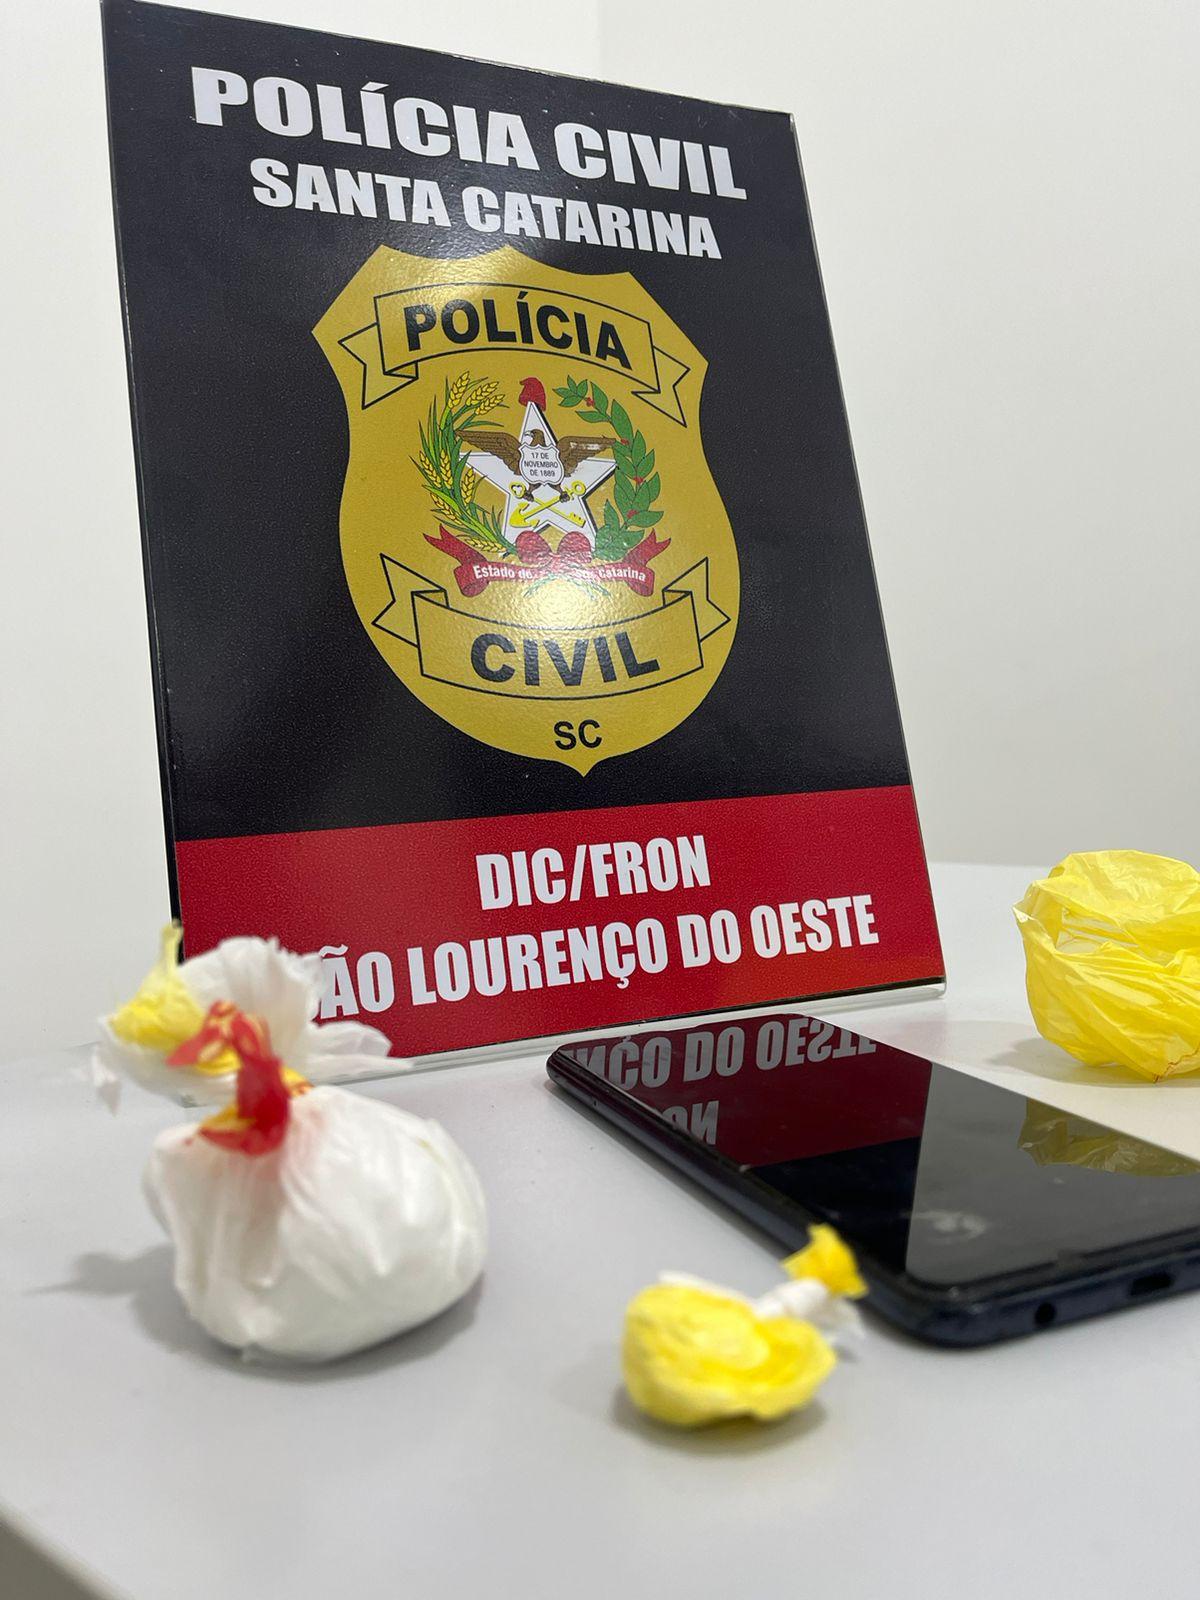 POLÍCIA CIVIL PRENDE HOMEM POR TRÁFICO DE DROGAS EM SÃO LOURENÇO DO OESTE/SC.